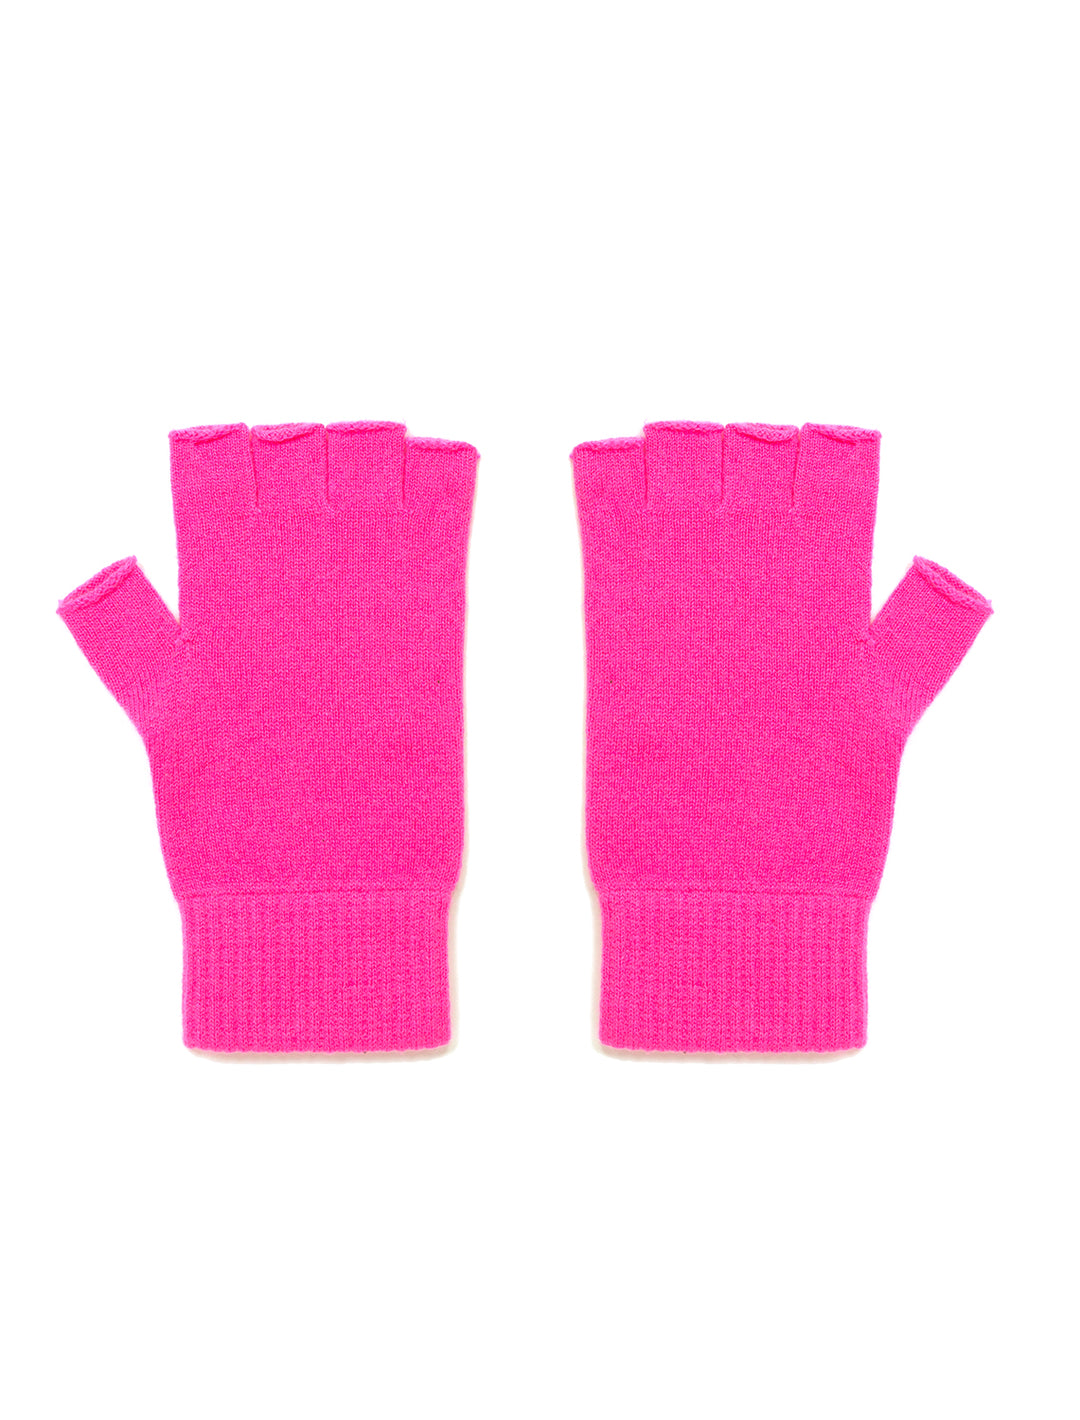 Jumper 1234's Fingerless Gloves in Hot Pink.